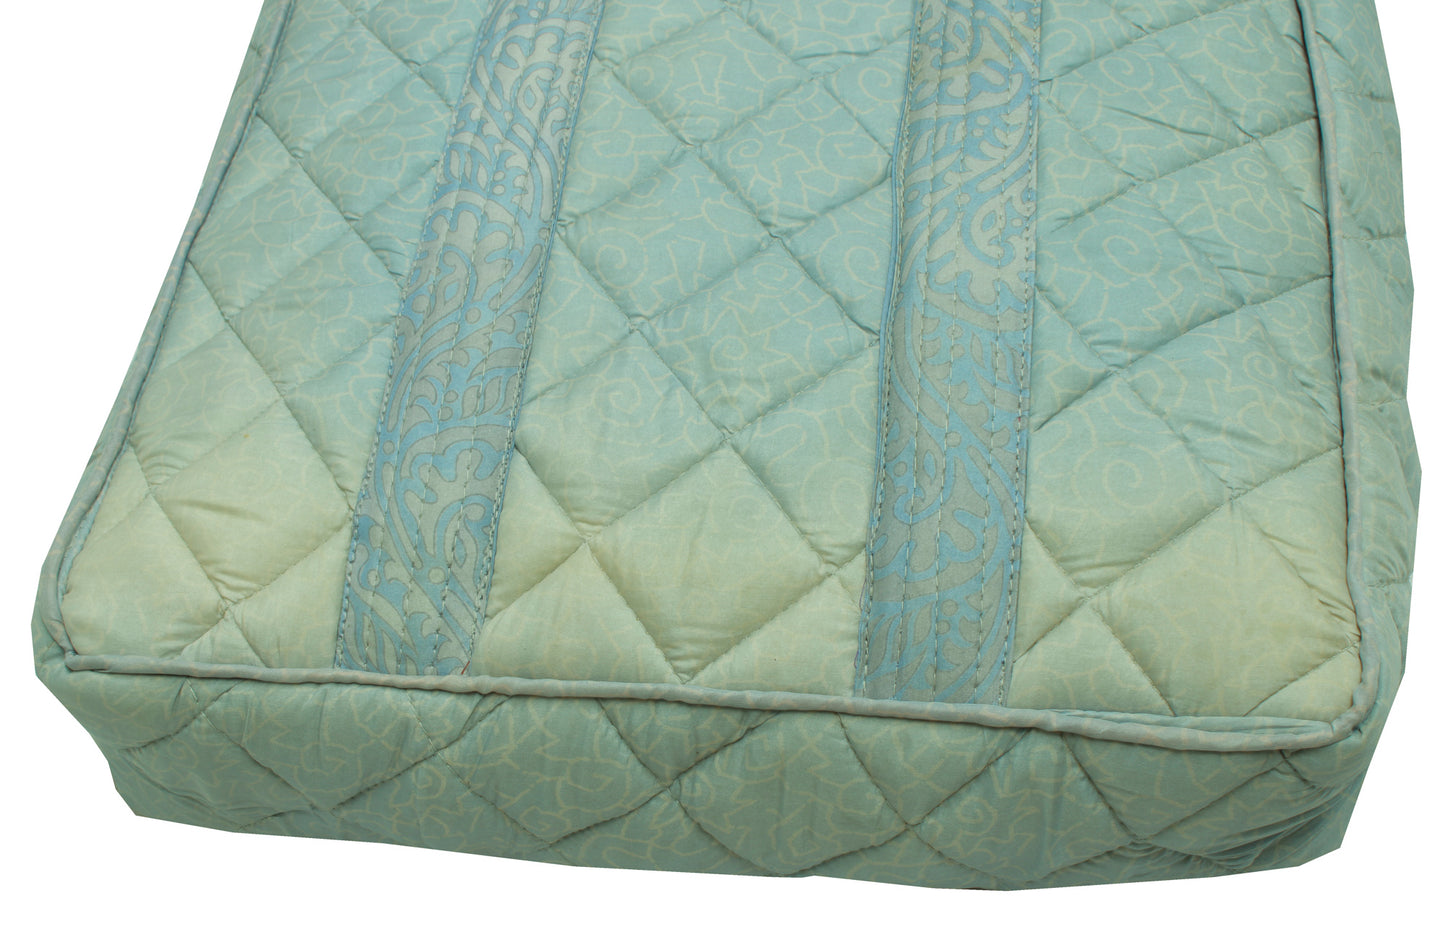 Sushila Vintage Sky Blue Tote Bag 100% Pure Silk Printed Handbag Shoulder Bag